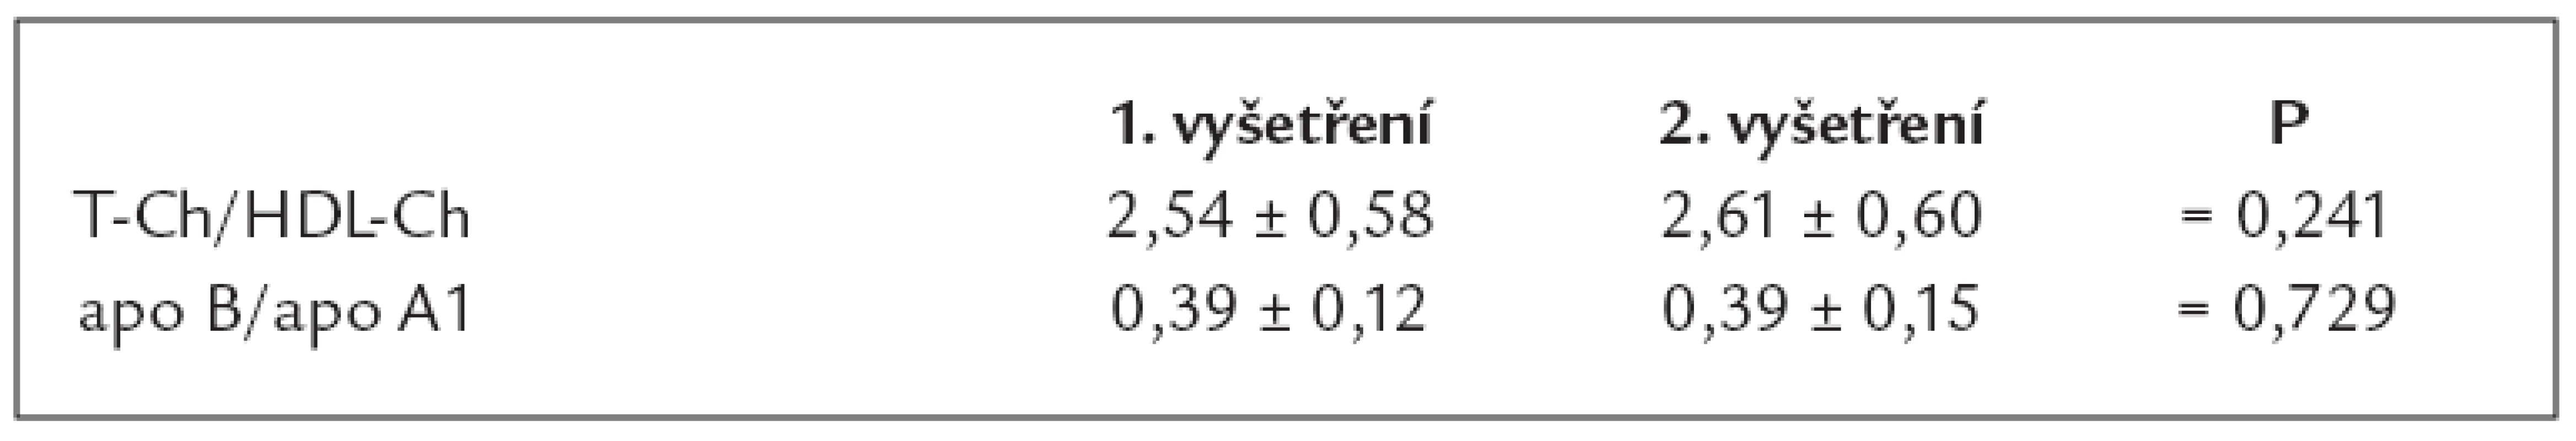 Hodnoty vypočtených indexů krevních lipidů a lipoproteinů při 1. a 2. vyšetření (n = 44).